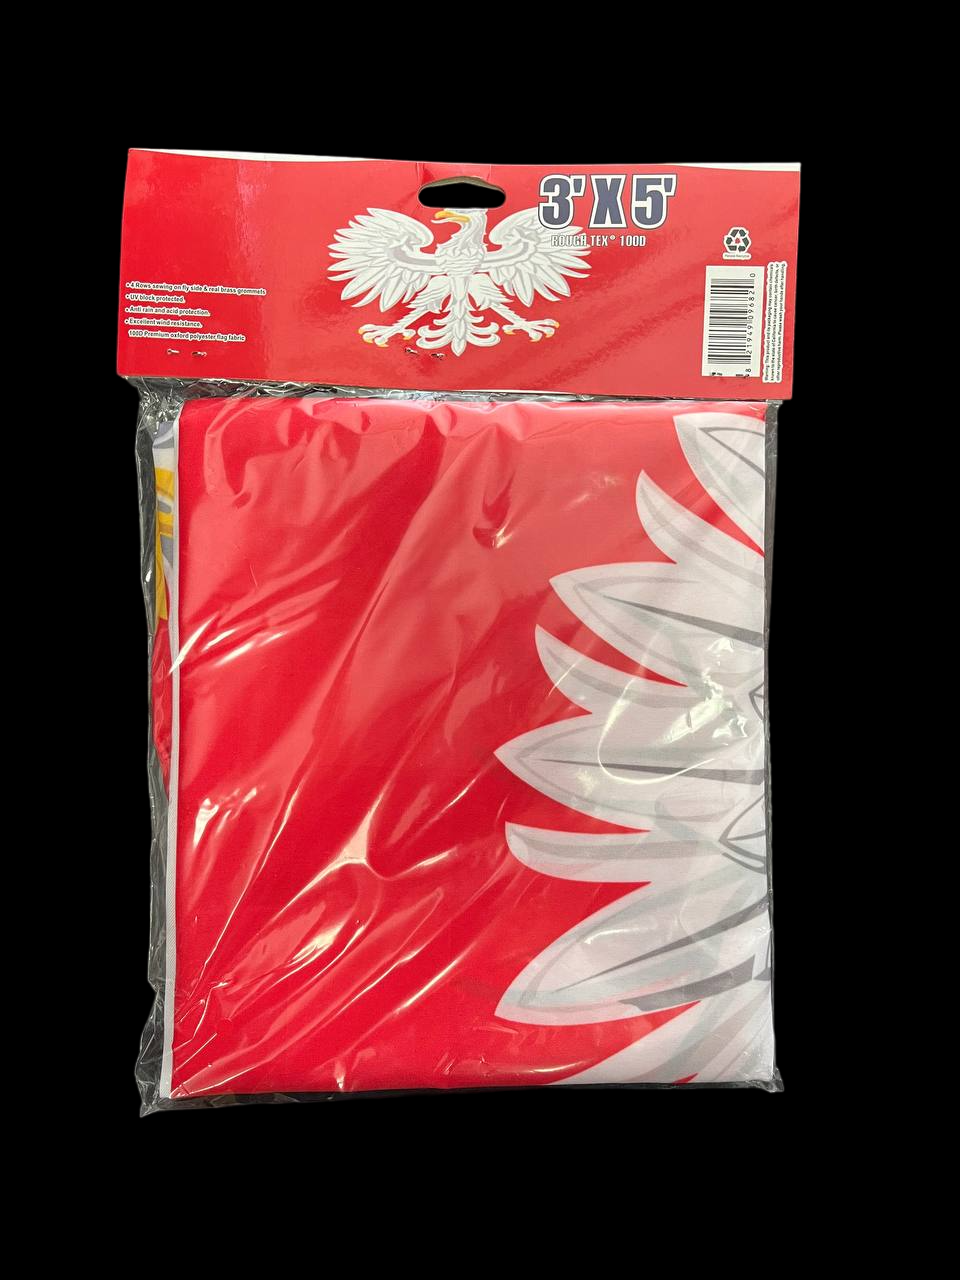 Poland 3"x 5" Flag 100D Red Polska With Eagle